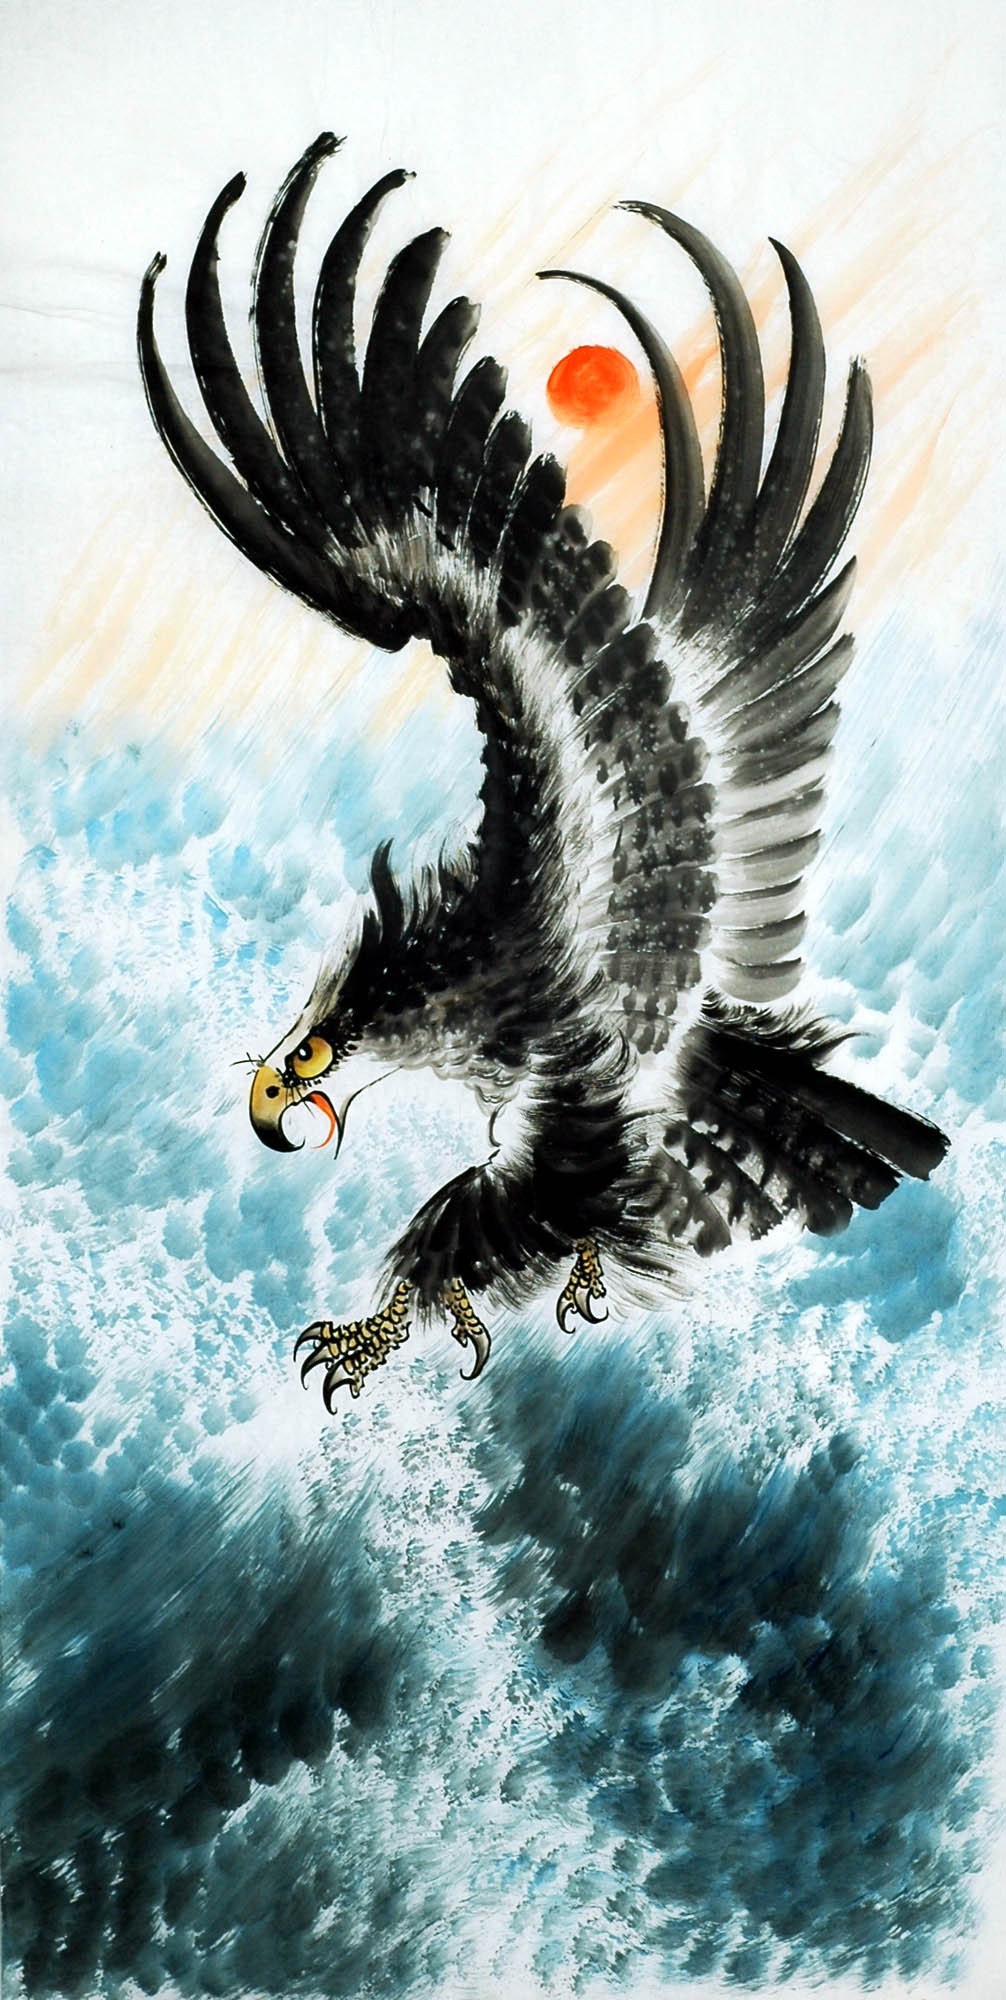 Chinese Eagle Painting - CNAG010535